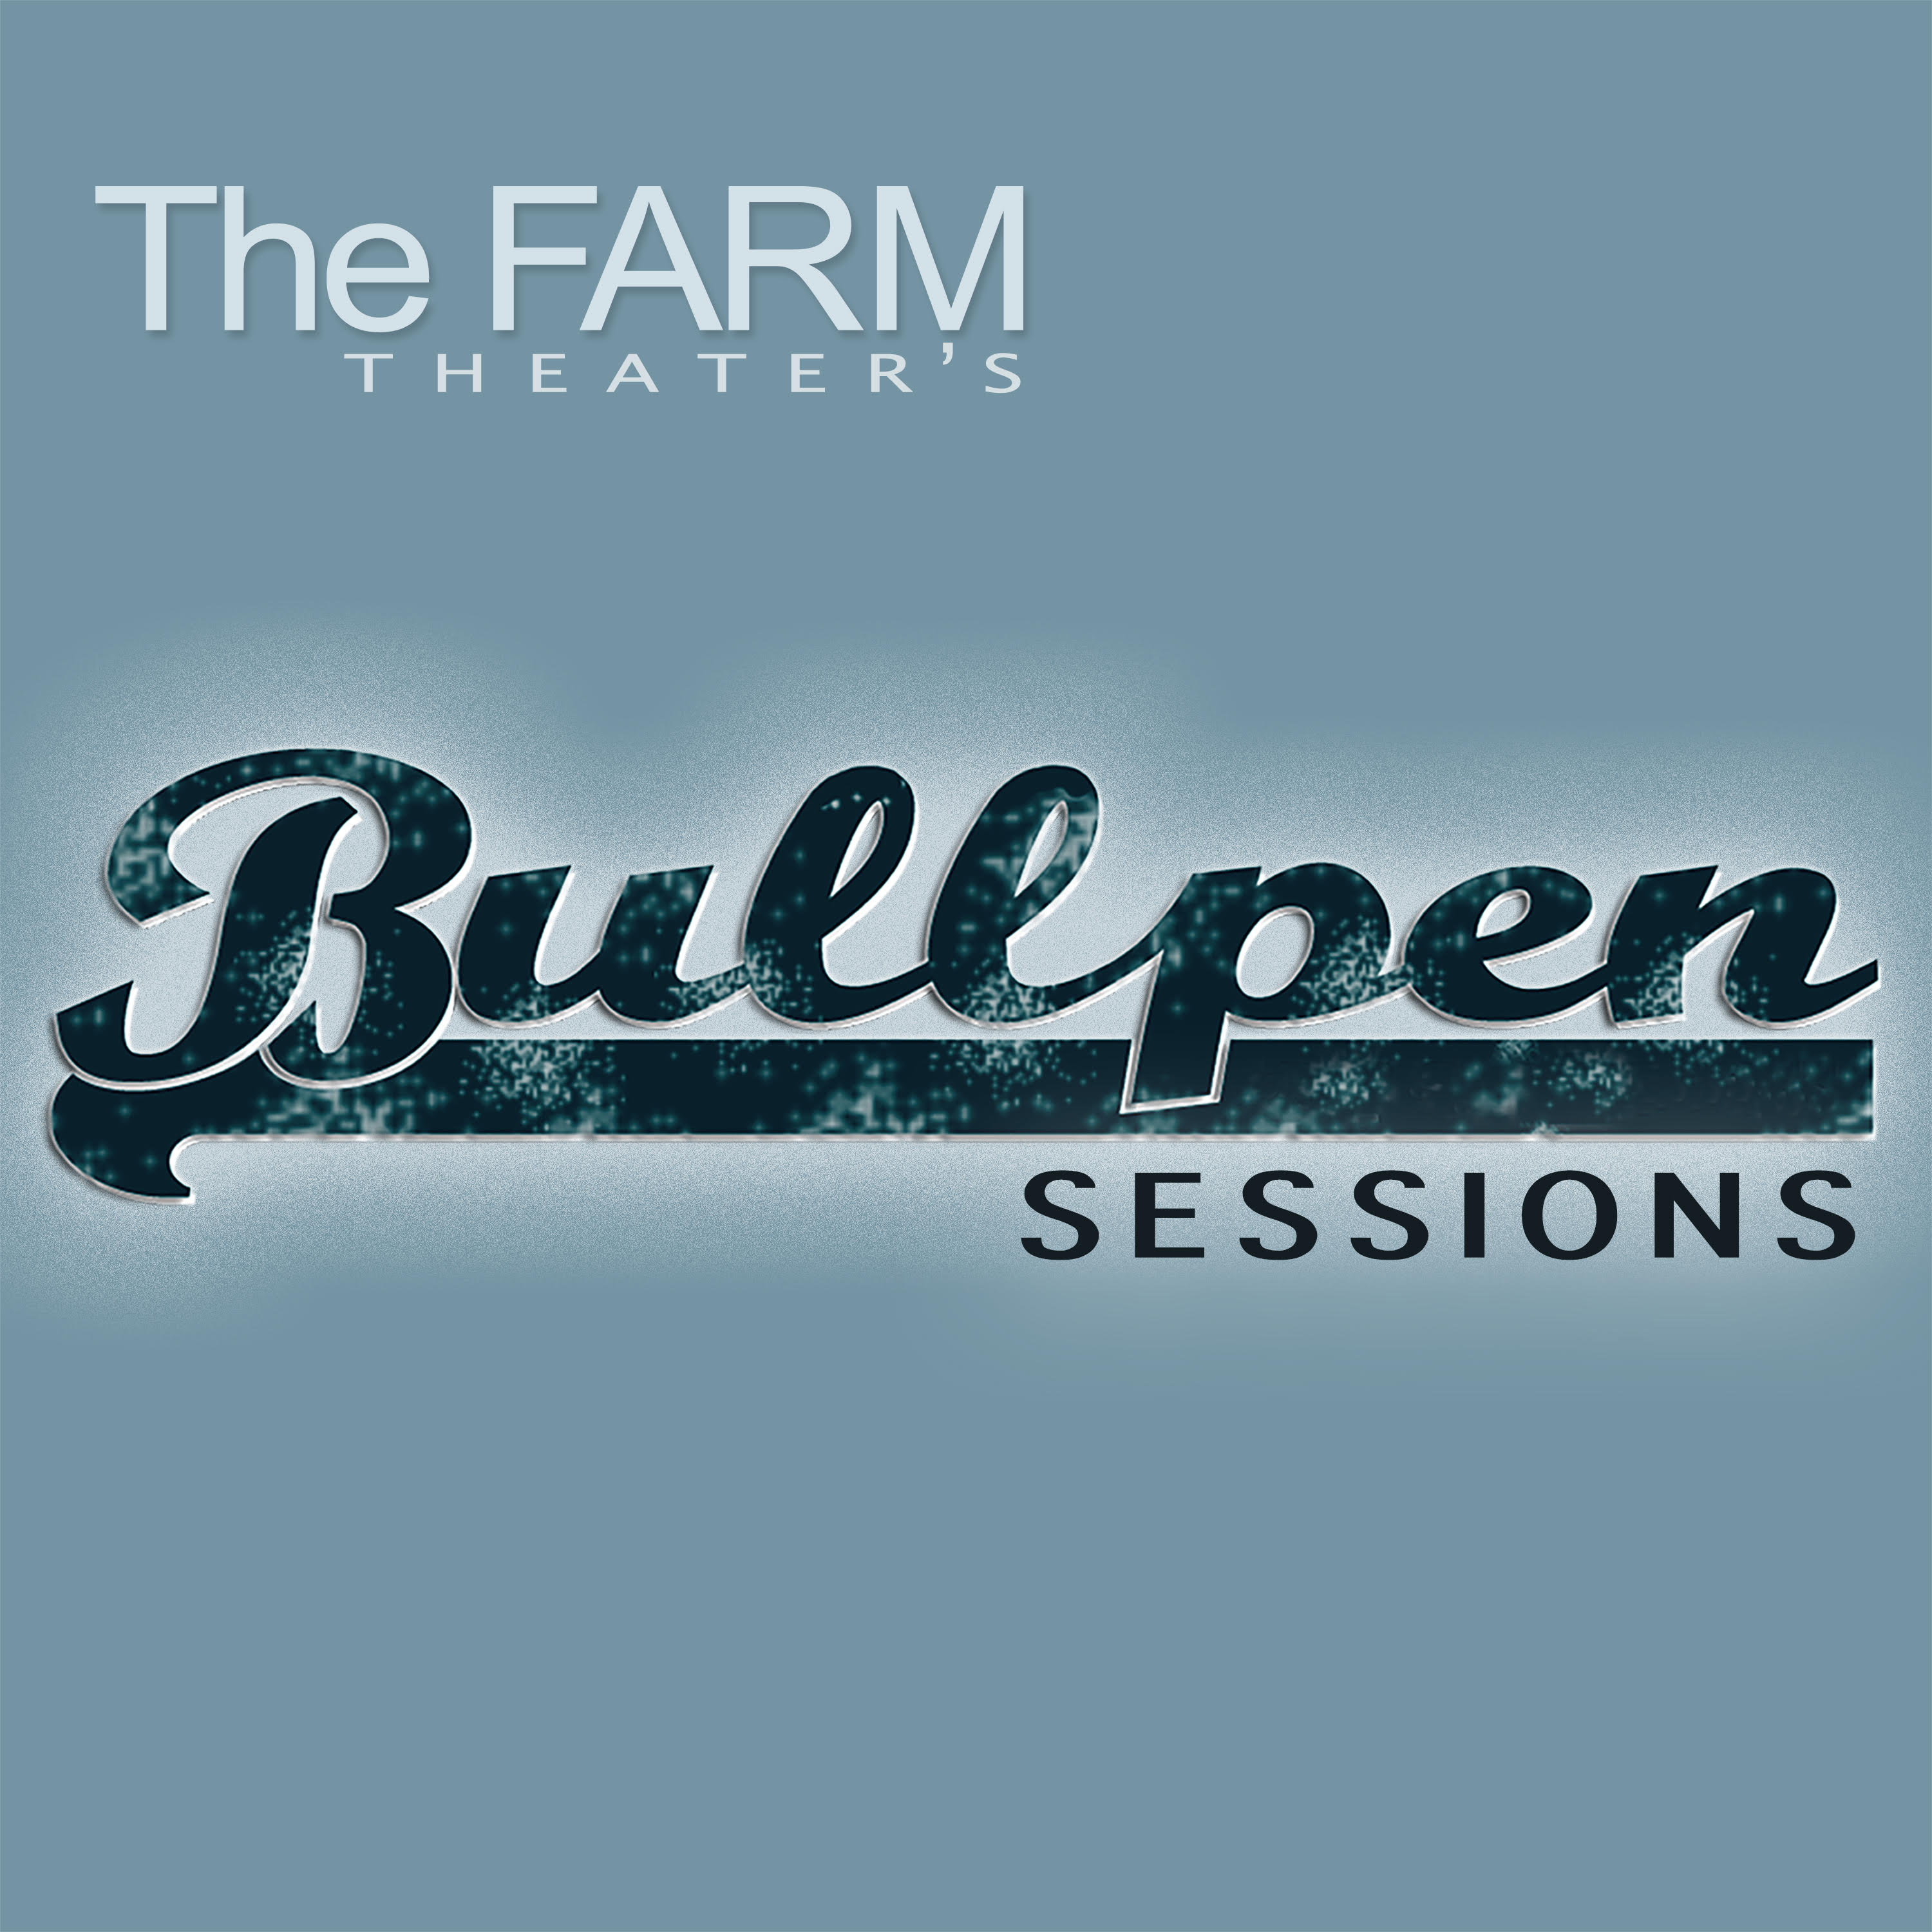 The Farm Theater S Bullpen Sessions - brawl stars bull pen